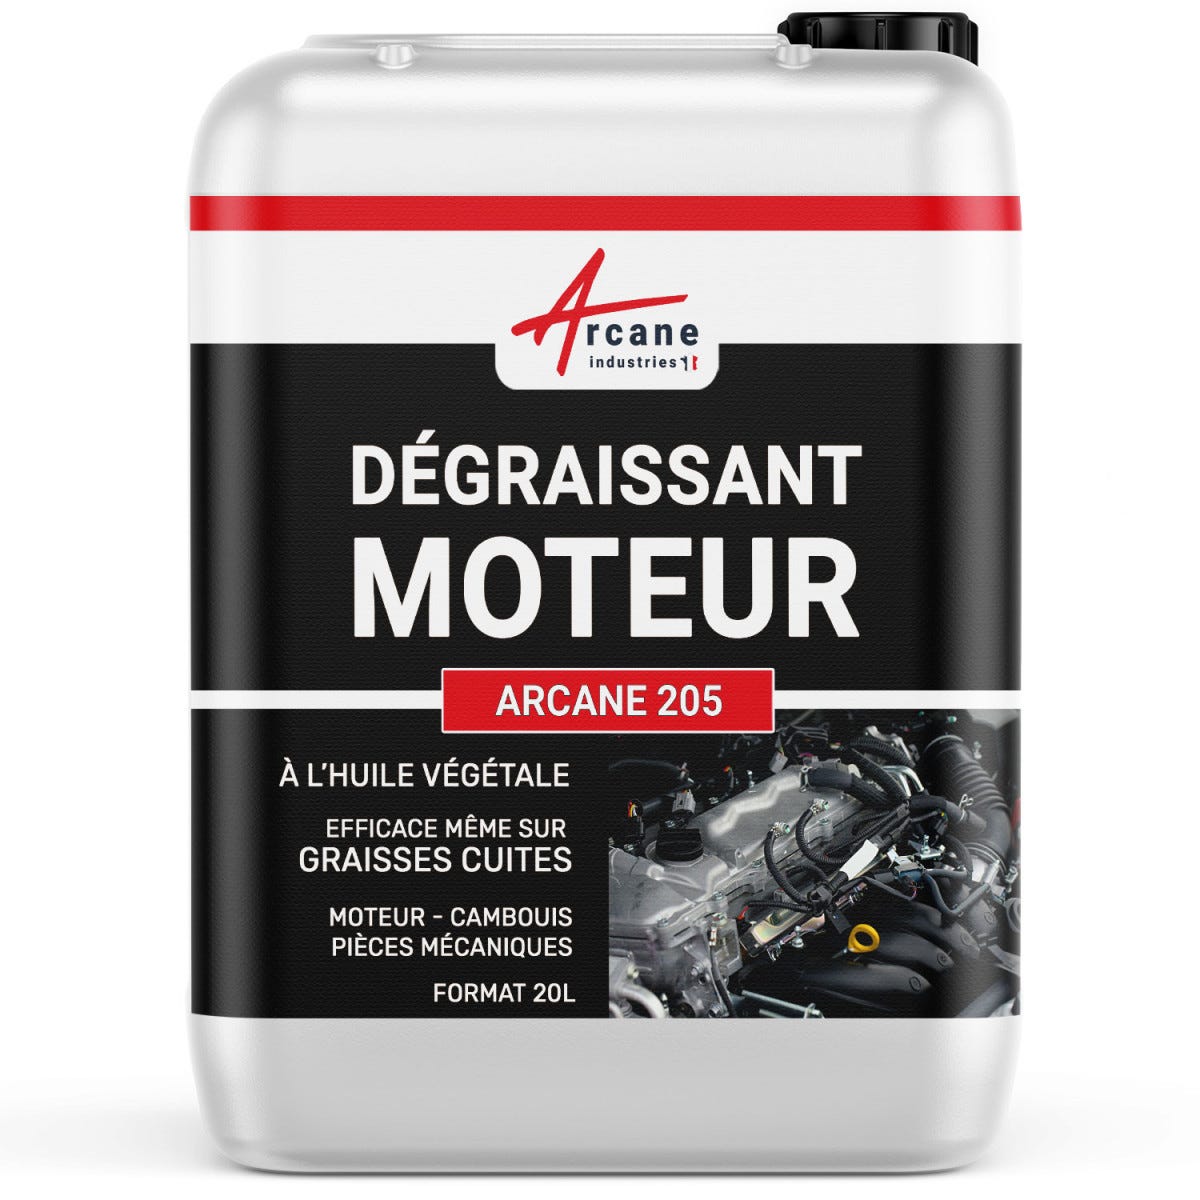 DÉGRAISSANT MOTEURS - Dégraissant moteur graisses épaisses cambouis molykote Ester méthylique de colza, - 20 L - - ARCANE INDUSTRIES 0